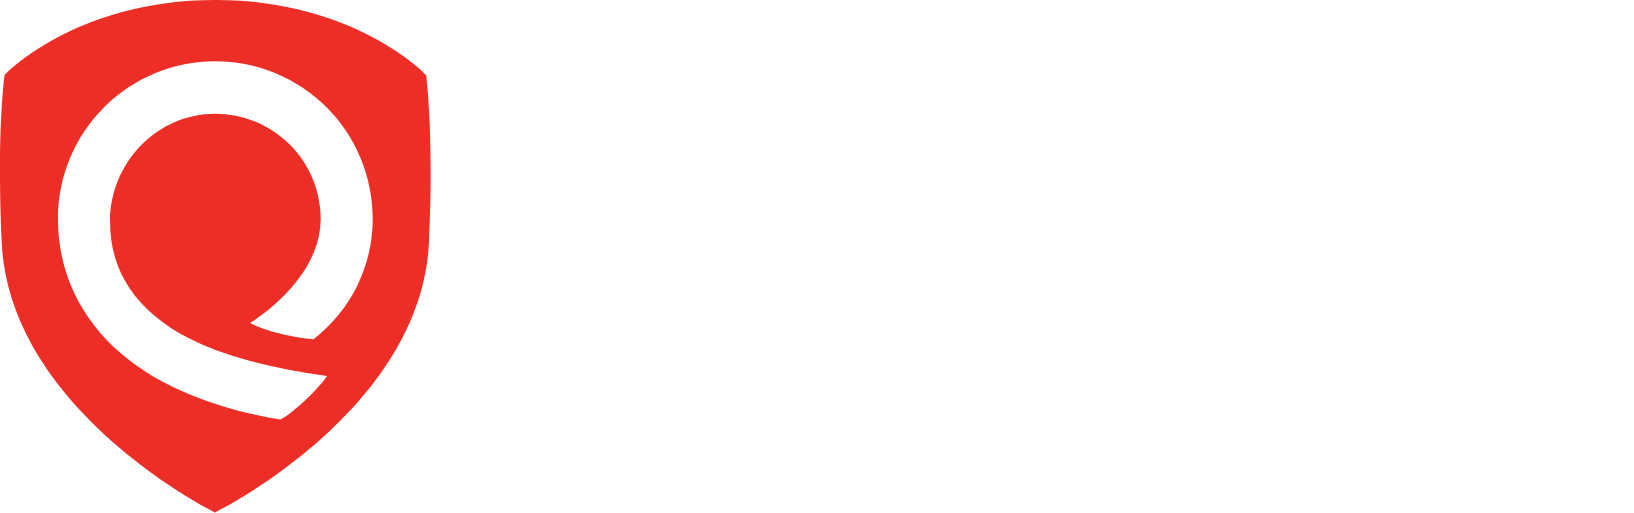 Qualys logo large for dark backgrounds (transparent PNG)